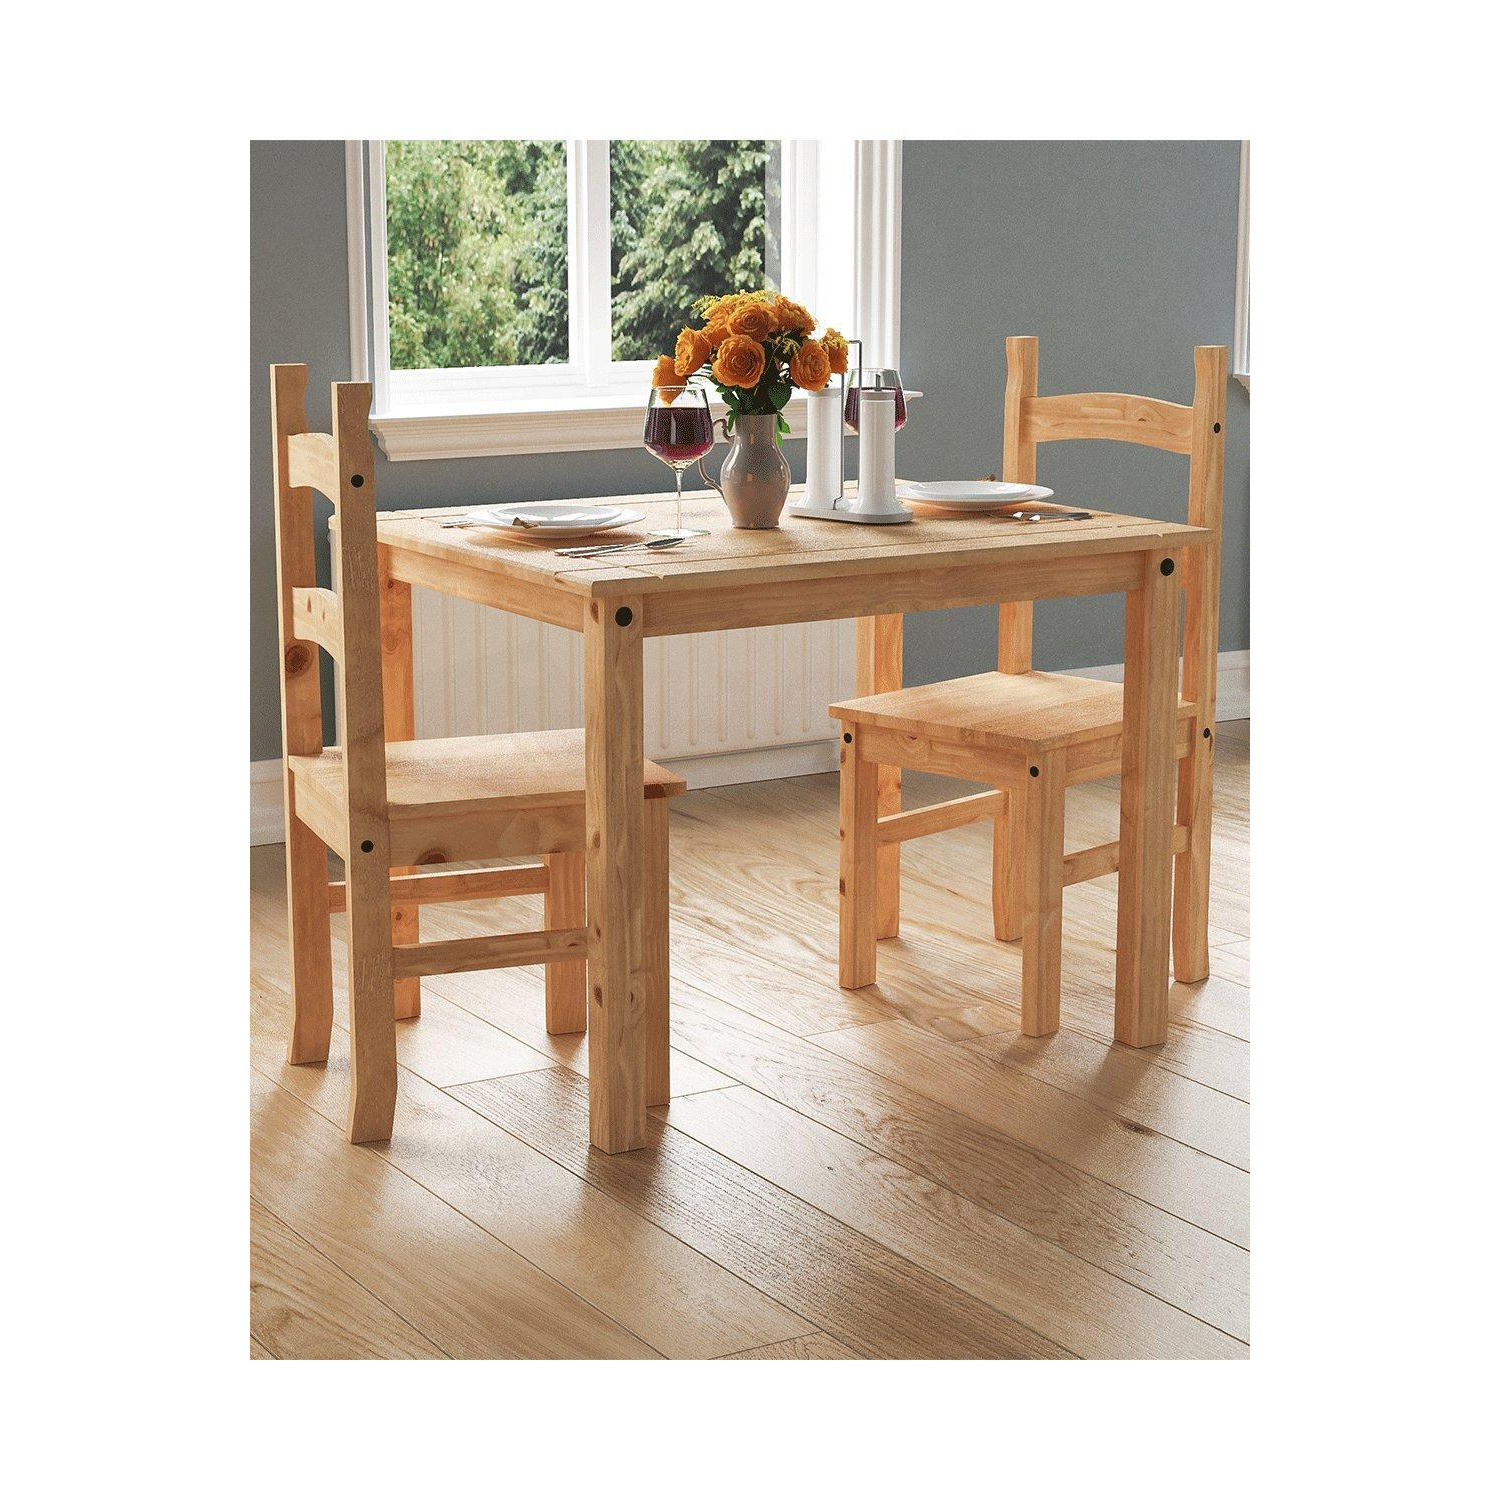 Vida Designs Corona 2 Seater Dining Set Solid Pine Kitchen Furniture - image 1